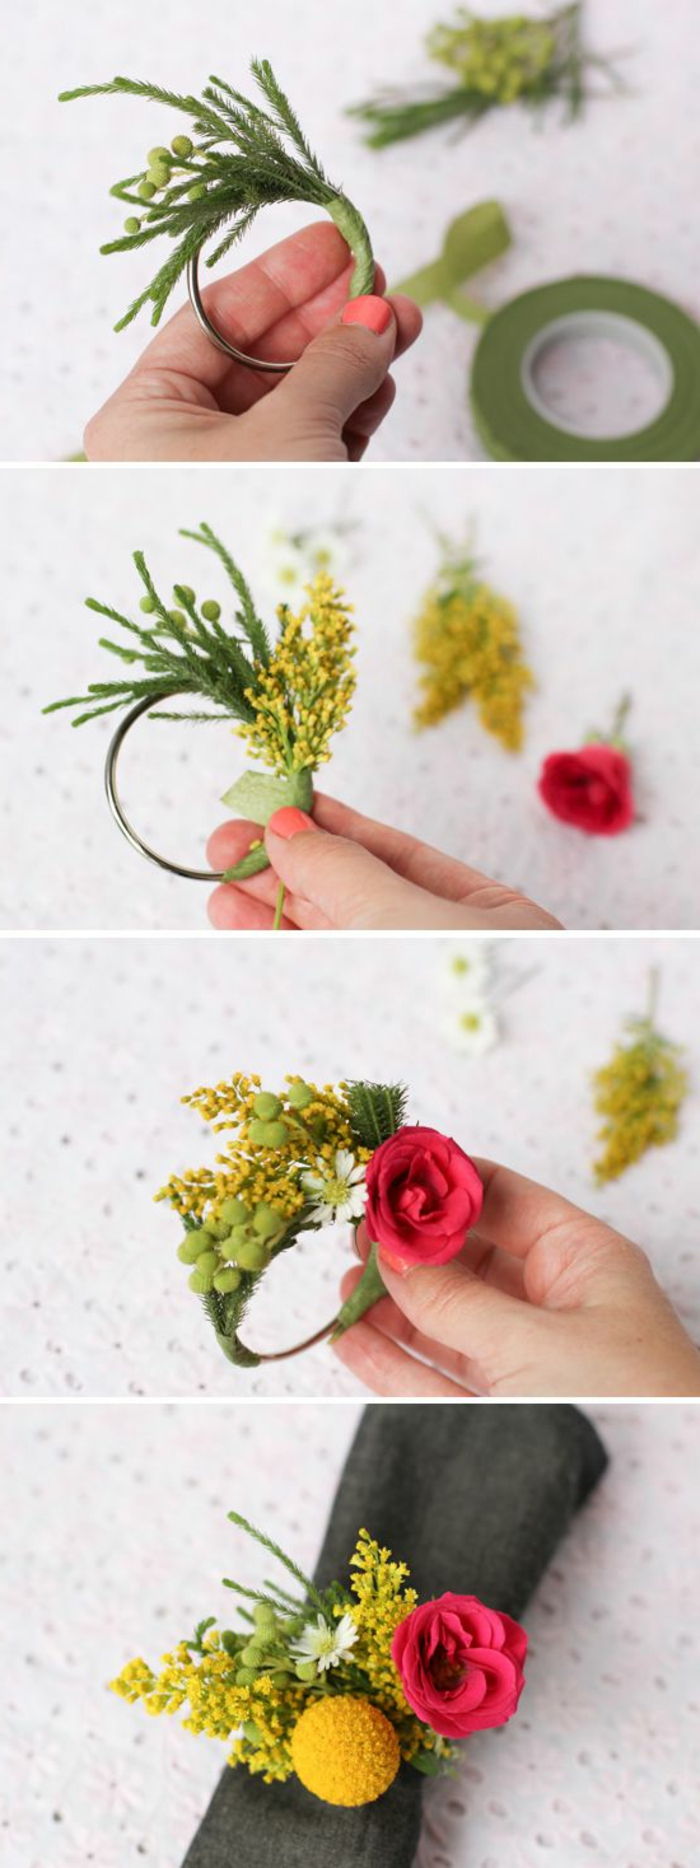 coole knutselideeën - maak zelf tafeldecoratie, kleine kransen met bloemen, servet